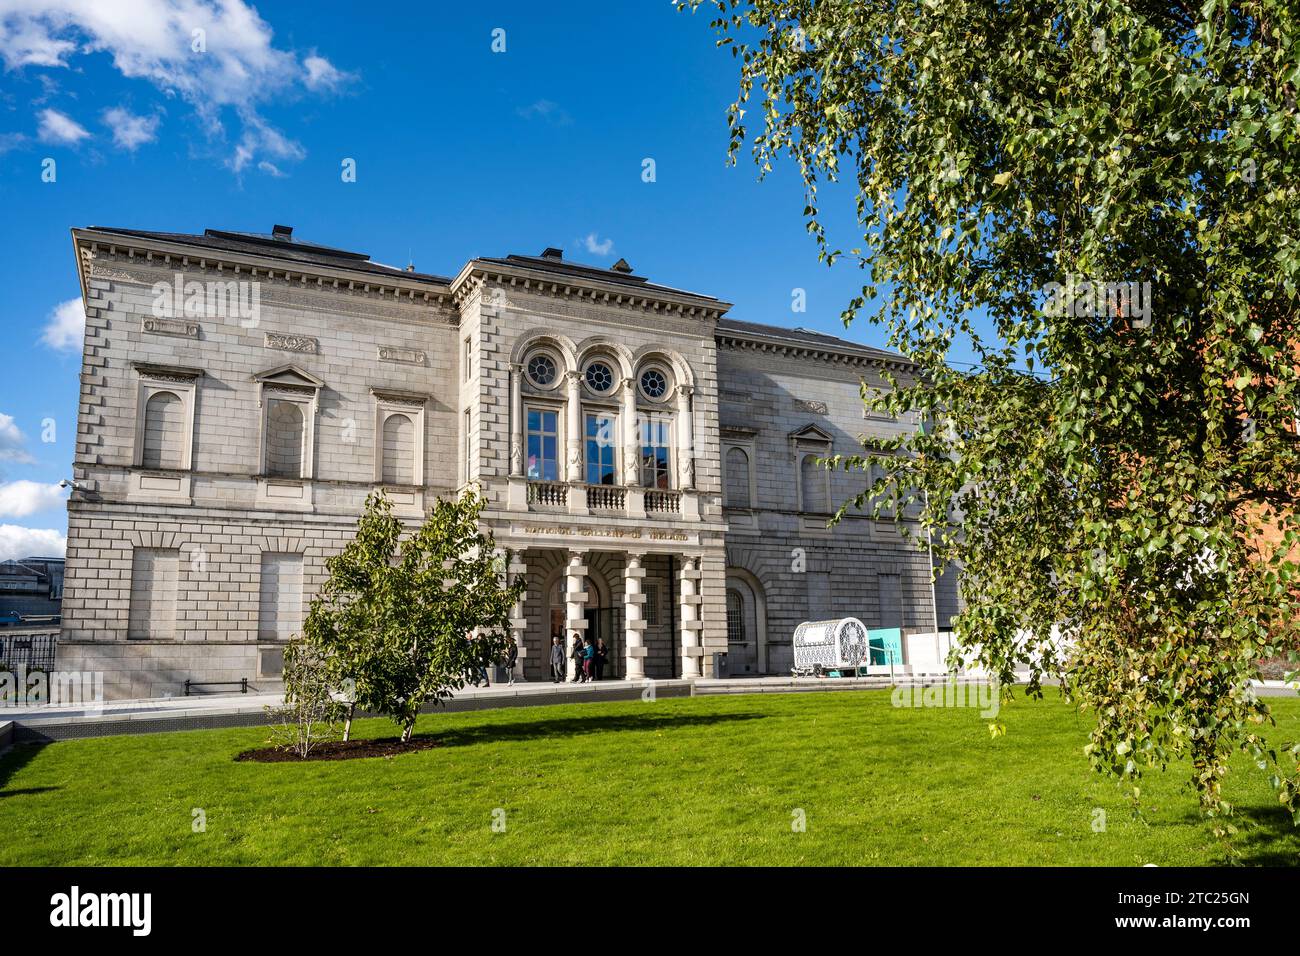 Fachada de la Galería Nacional de Irlanda, galería de arte con arte europeo e irlandés de la época medieval a la contemporánea, en el centro de Dublín, Irlanda Foto de stock